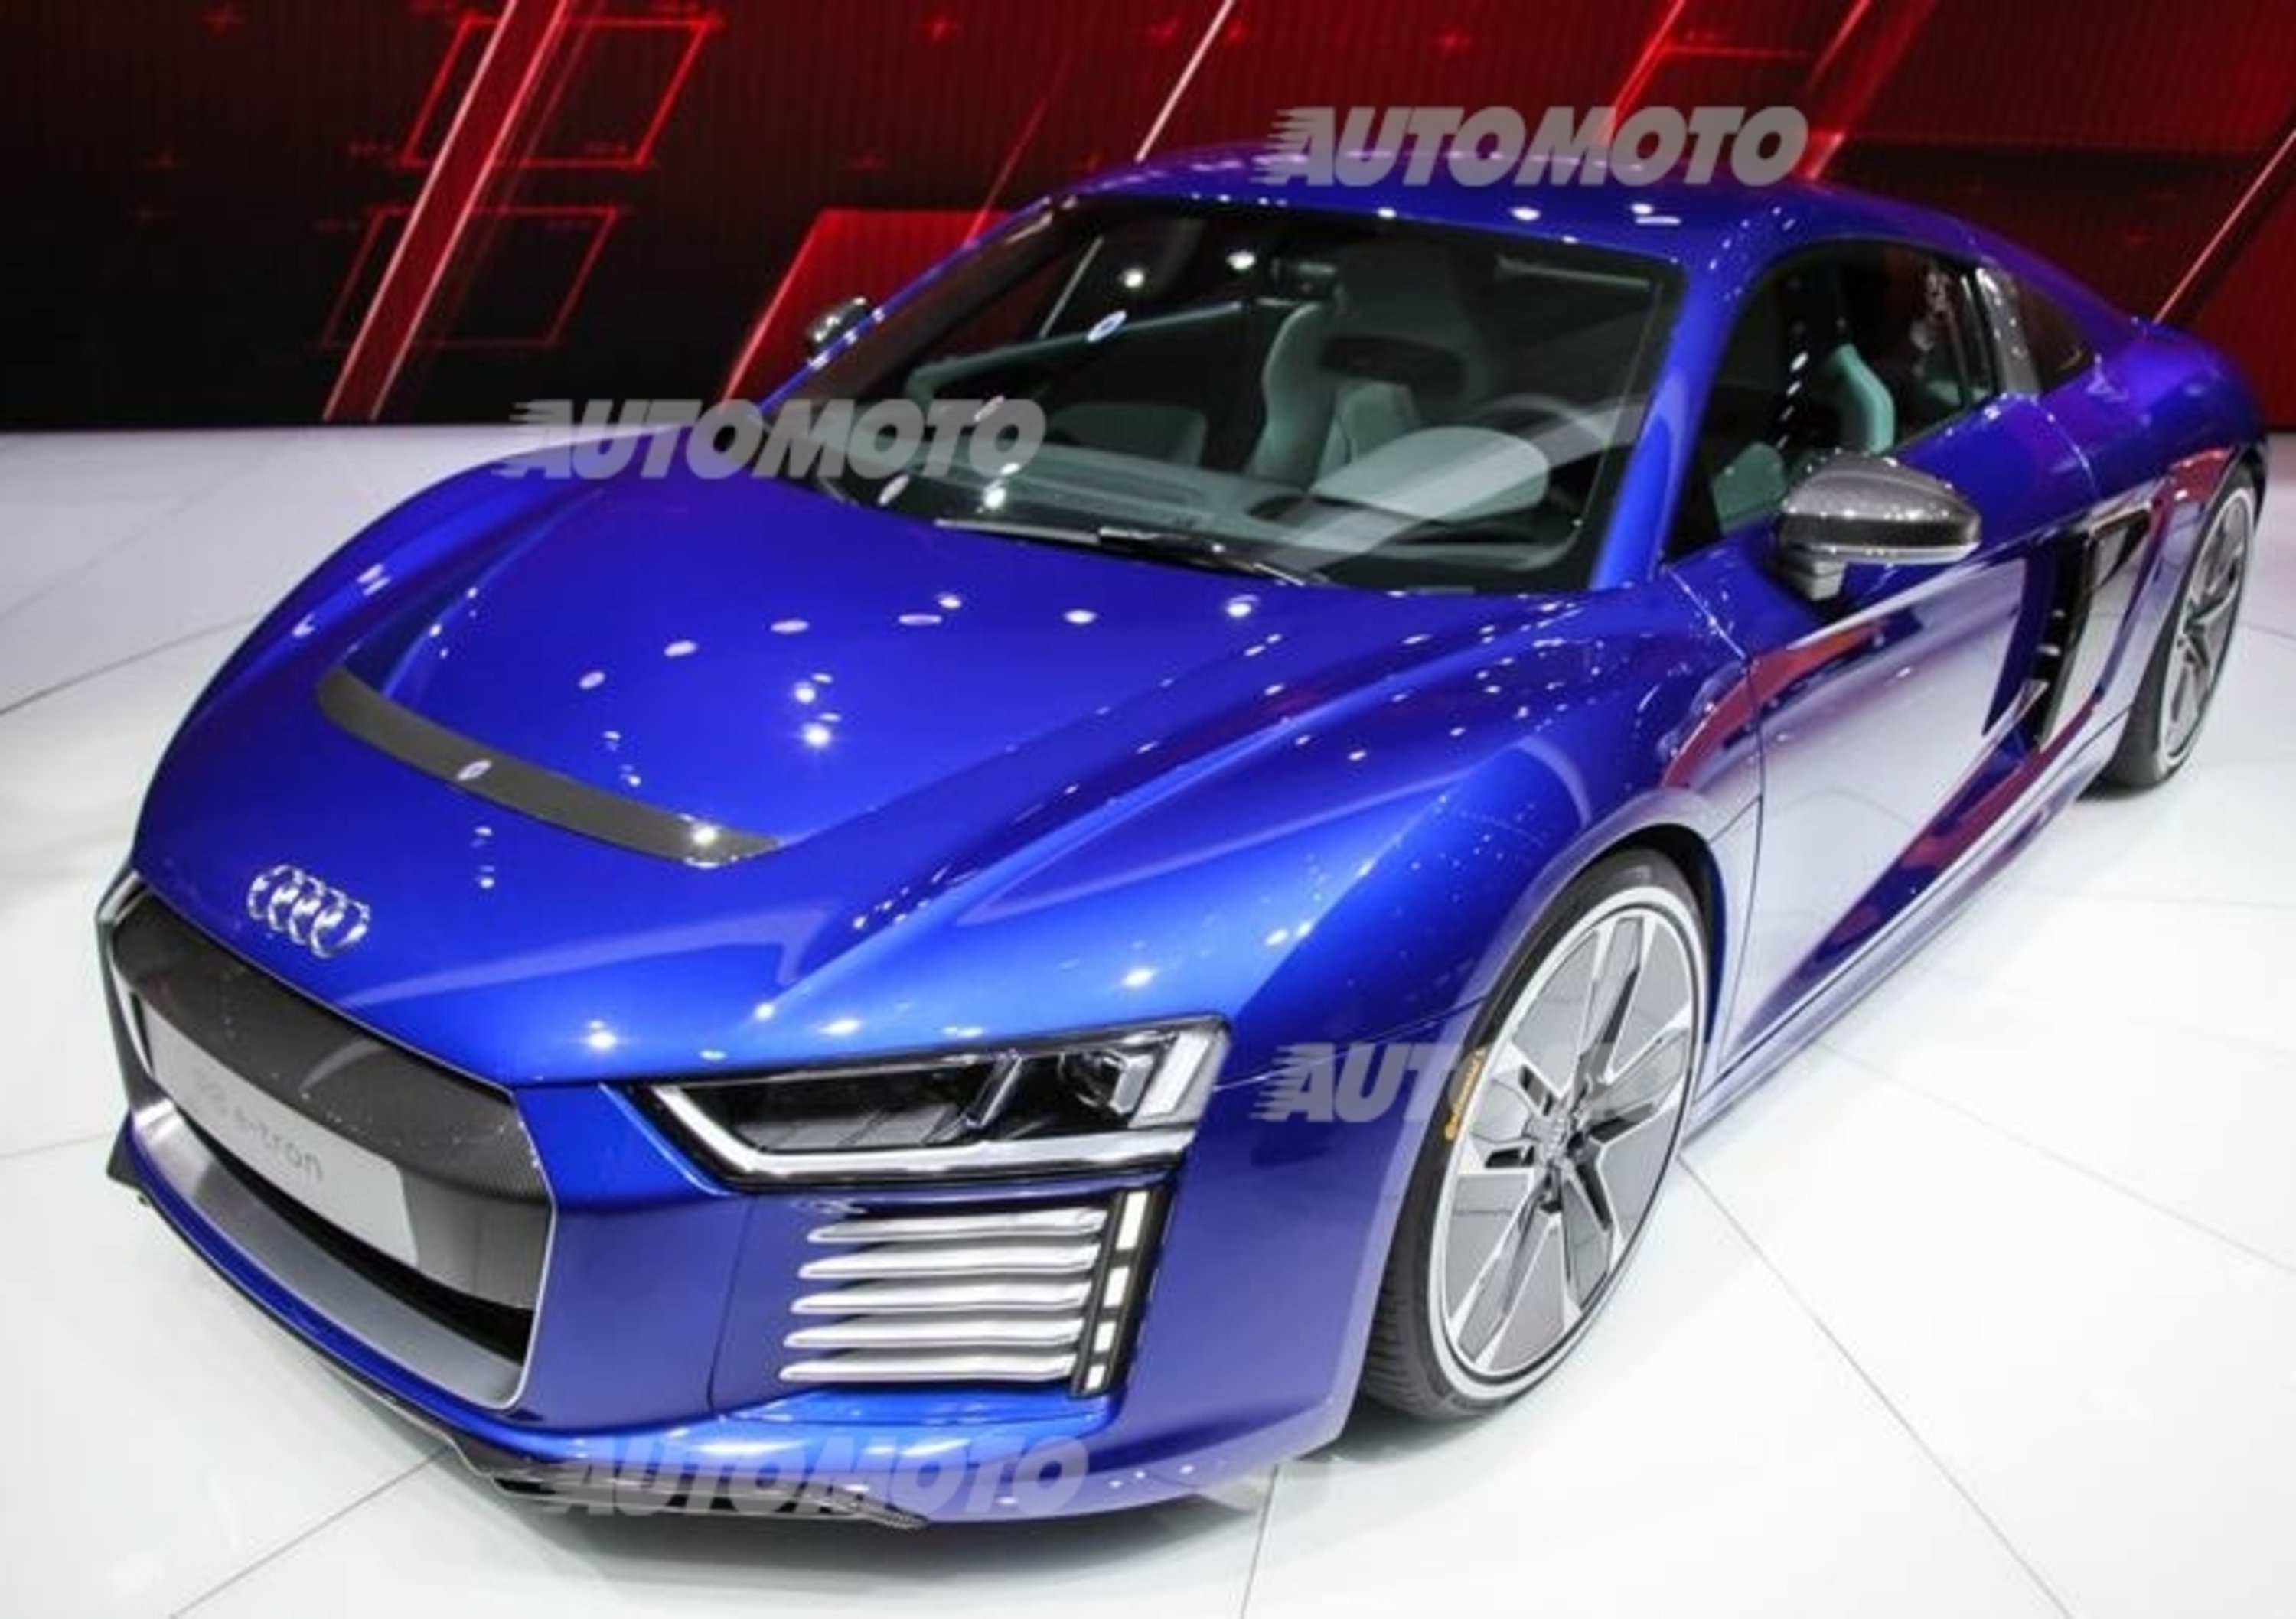 Nuova Audi R8 e-tron: la supercar elettrica ora diventa realt&agrave;